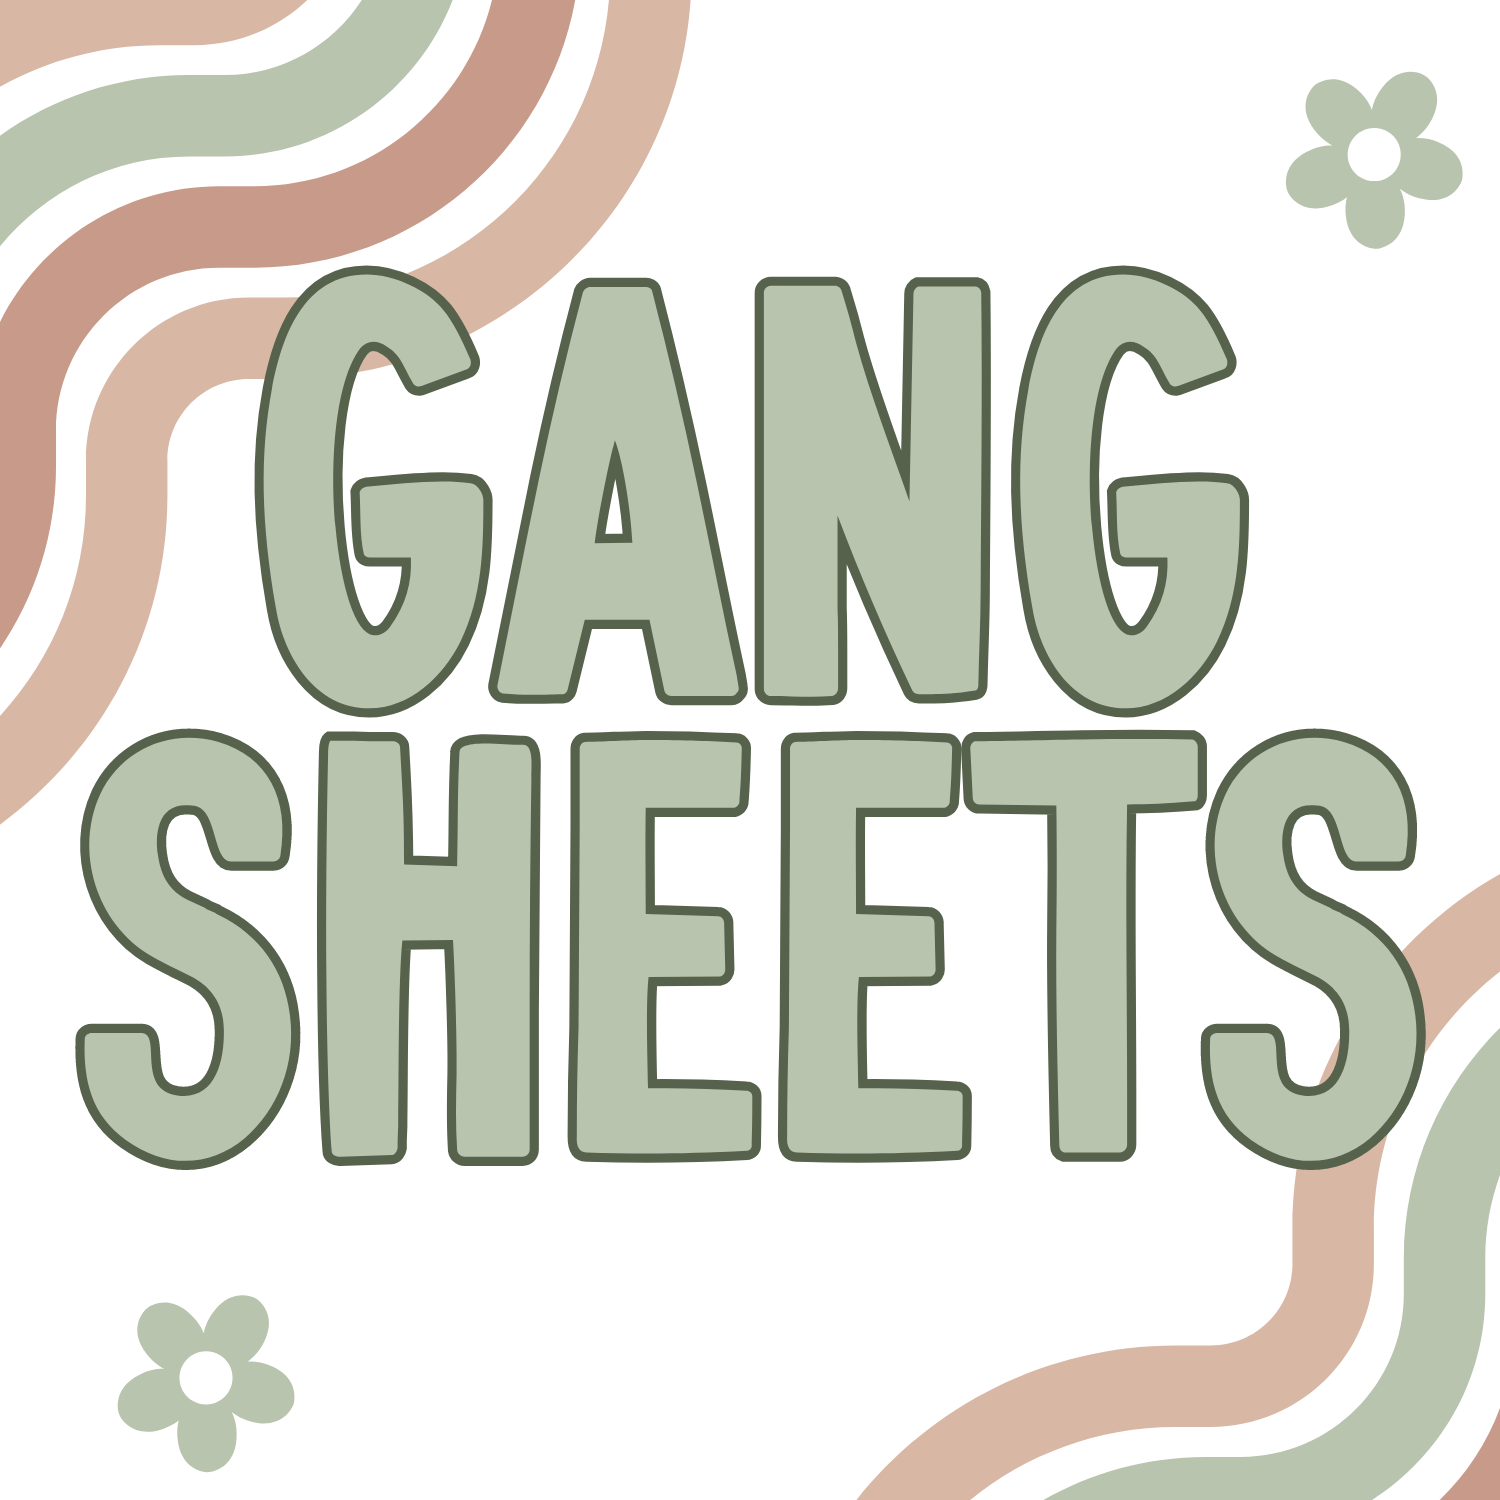 Gang sheets